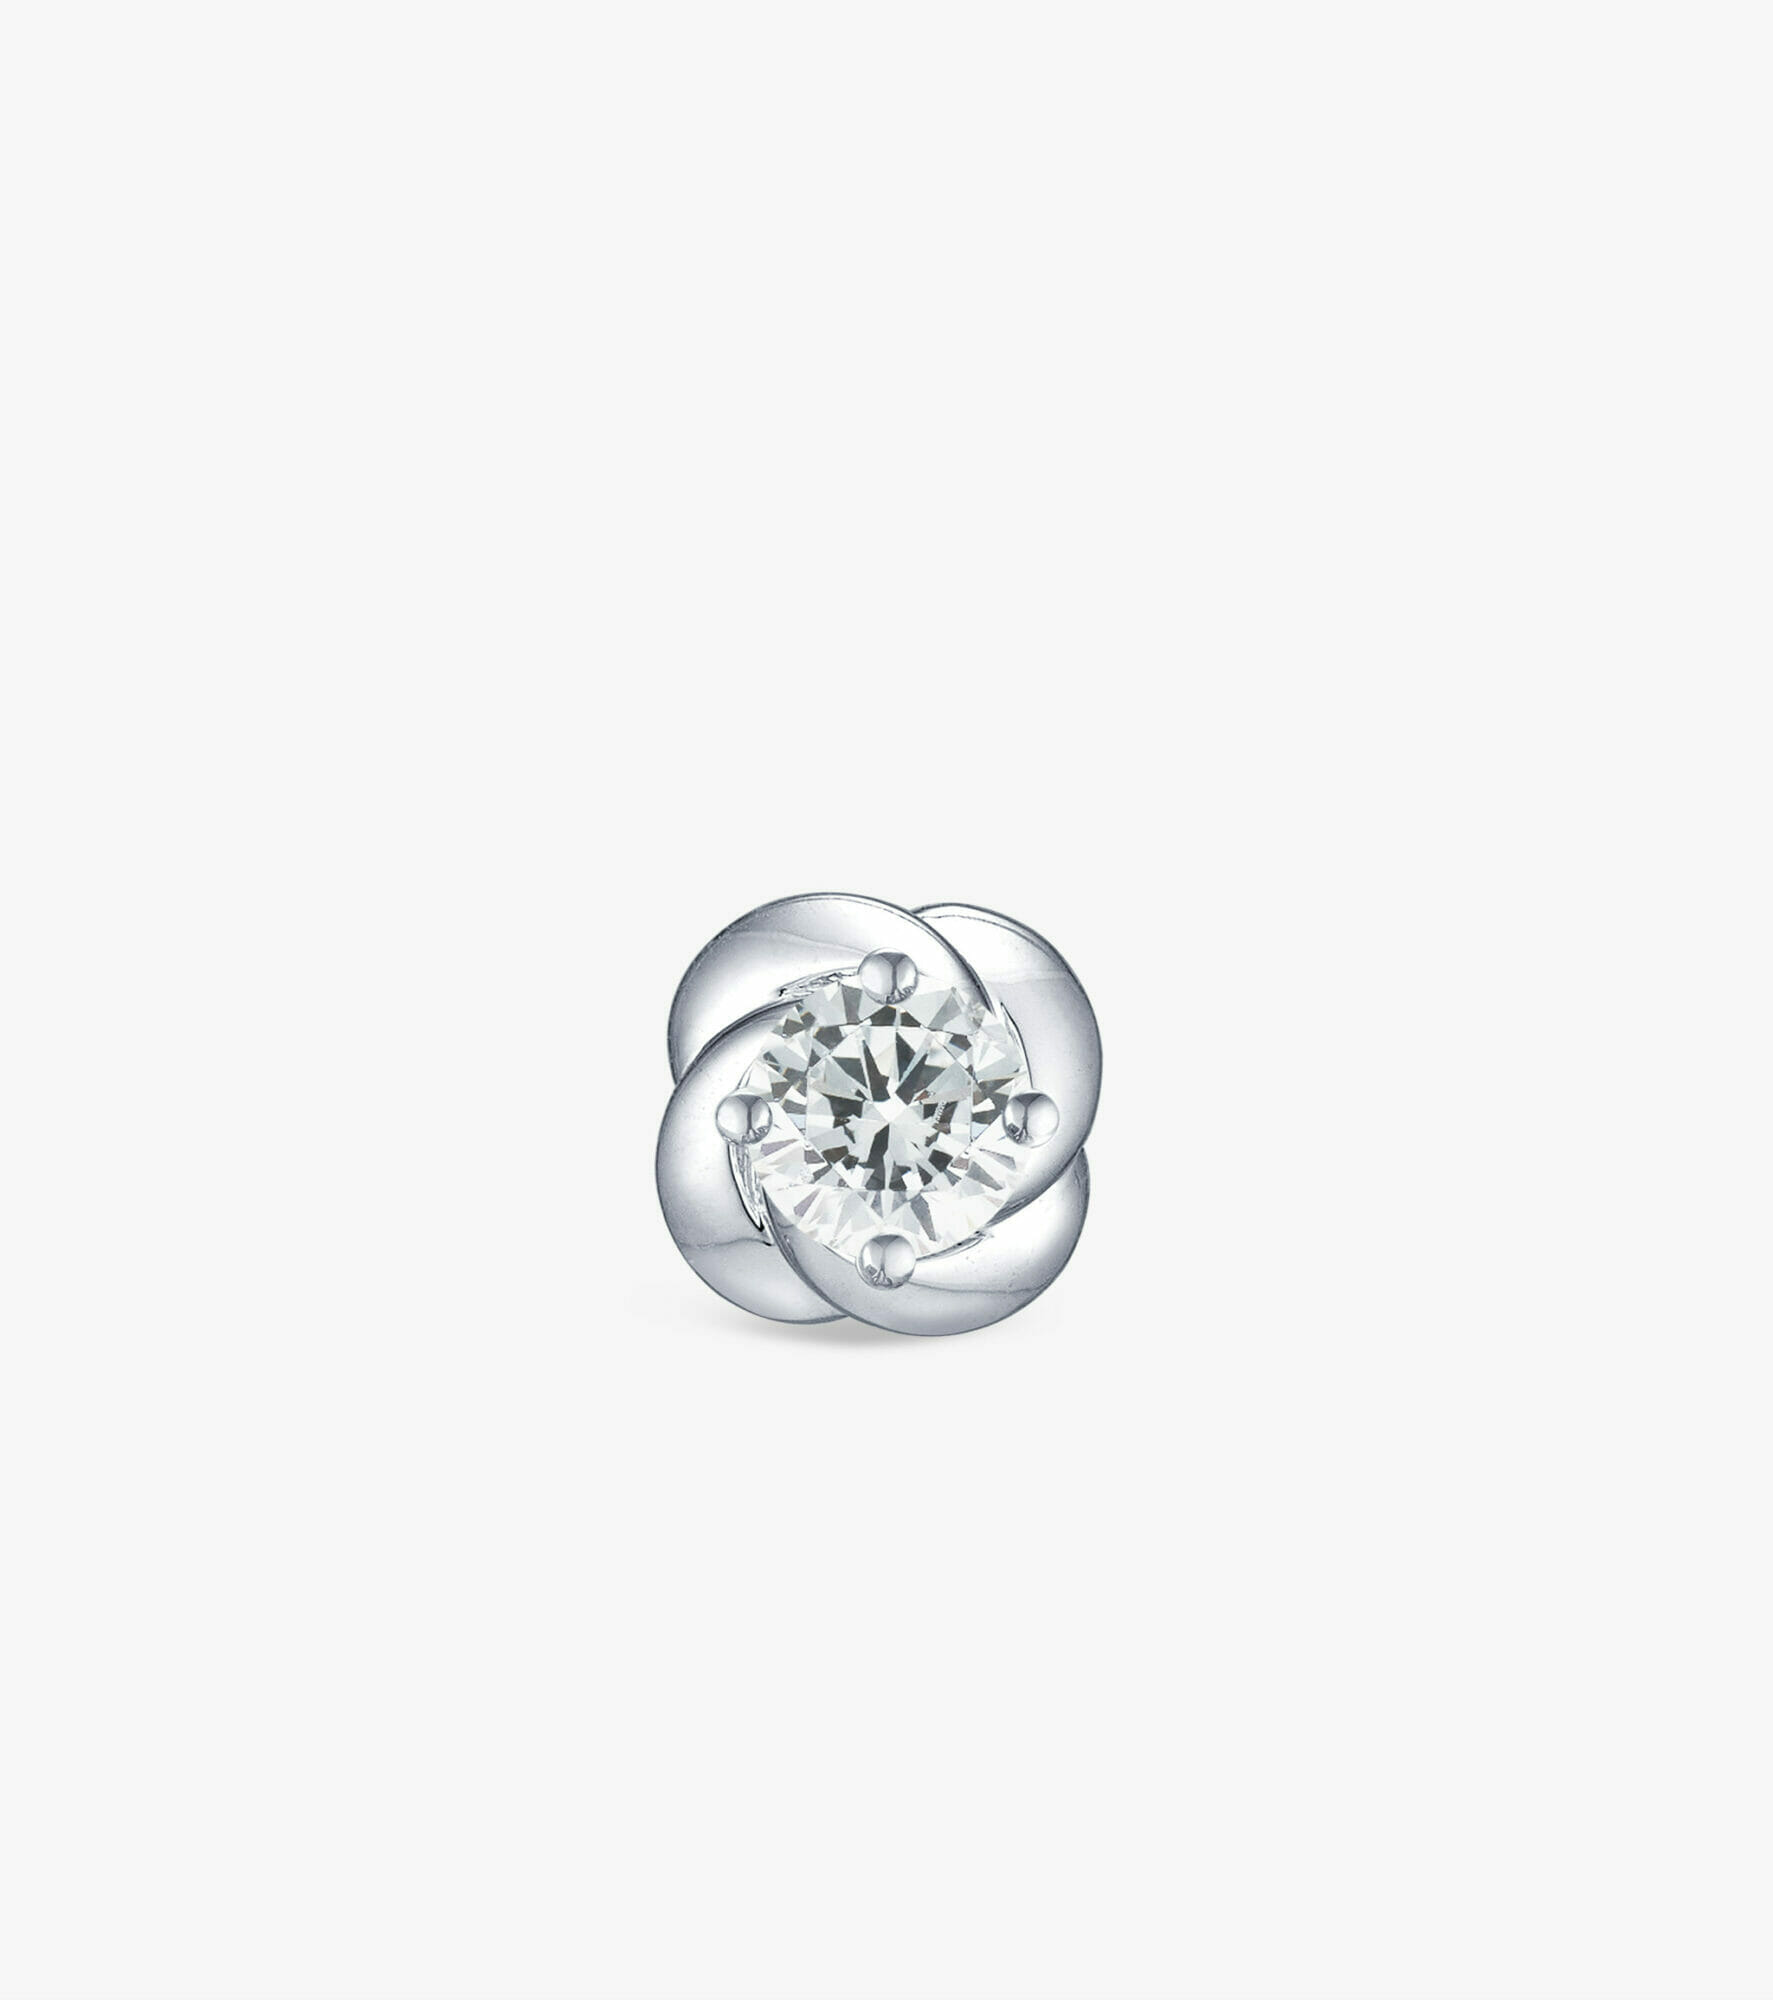 Vỏ bông tai Kim cương Vàng trắng DKBOTKC0000D136